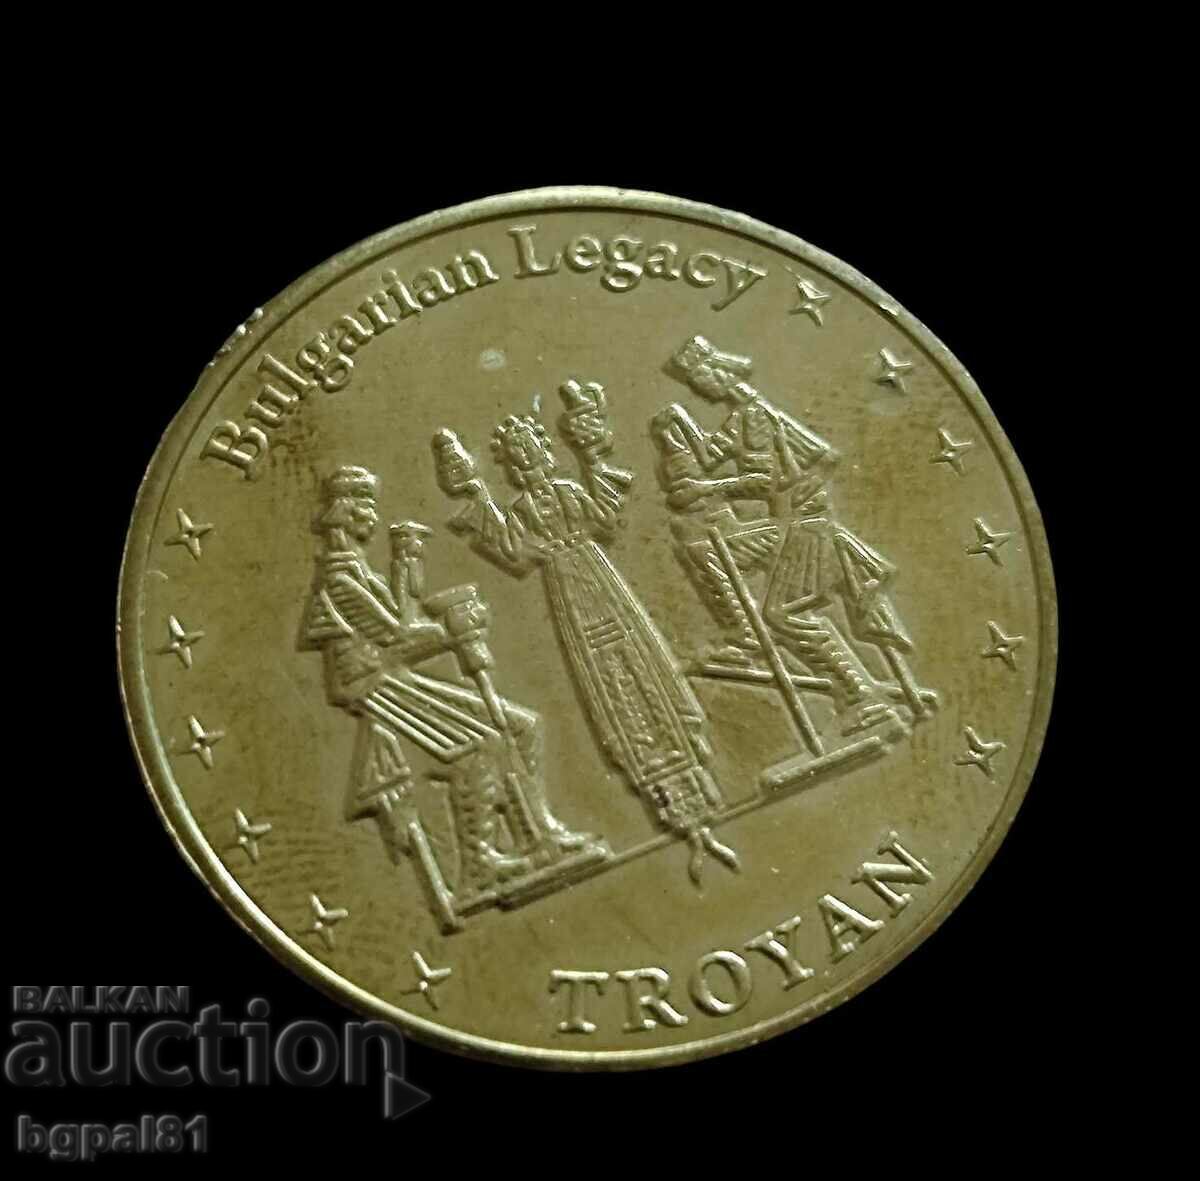 Troyan - Emisiune de medalii „Moștenire bulgară”.